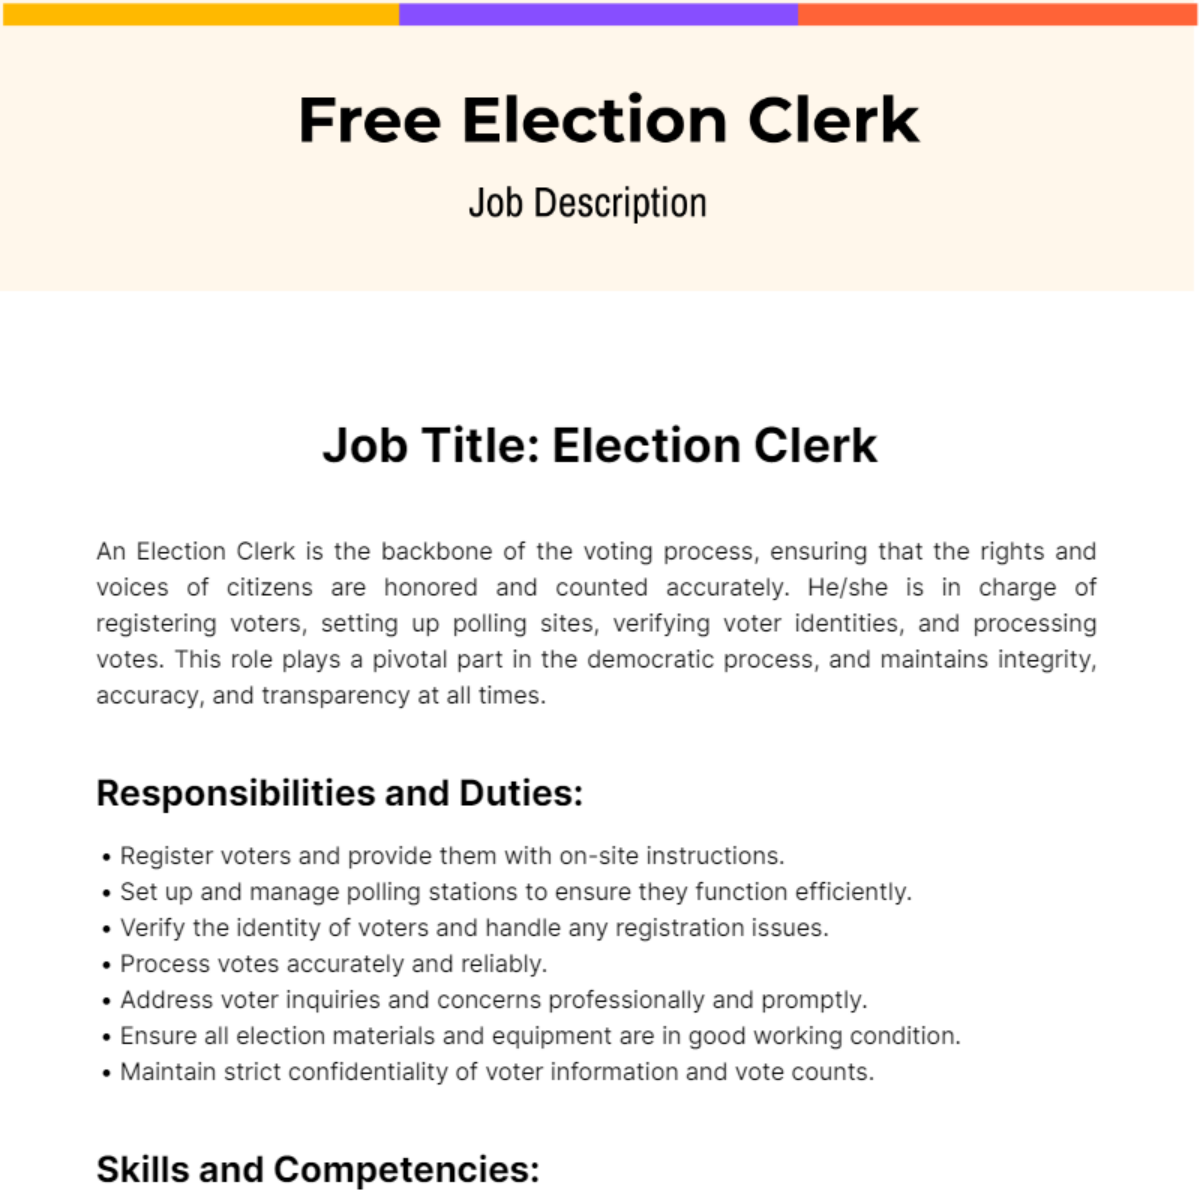 Free Election Clerk Job Description Template